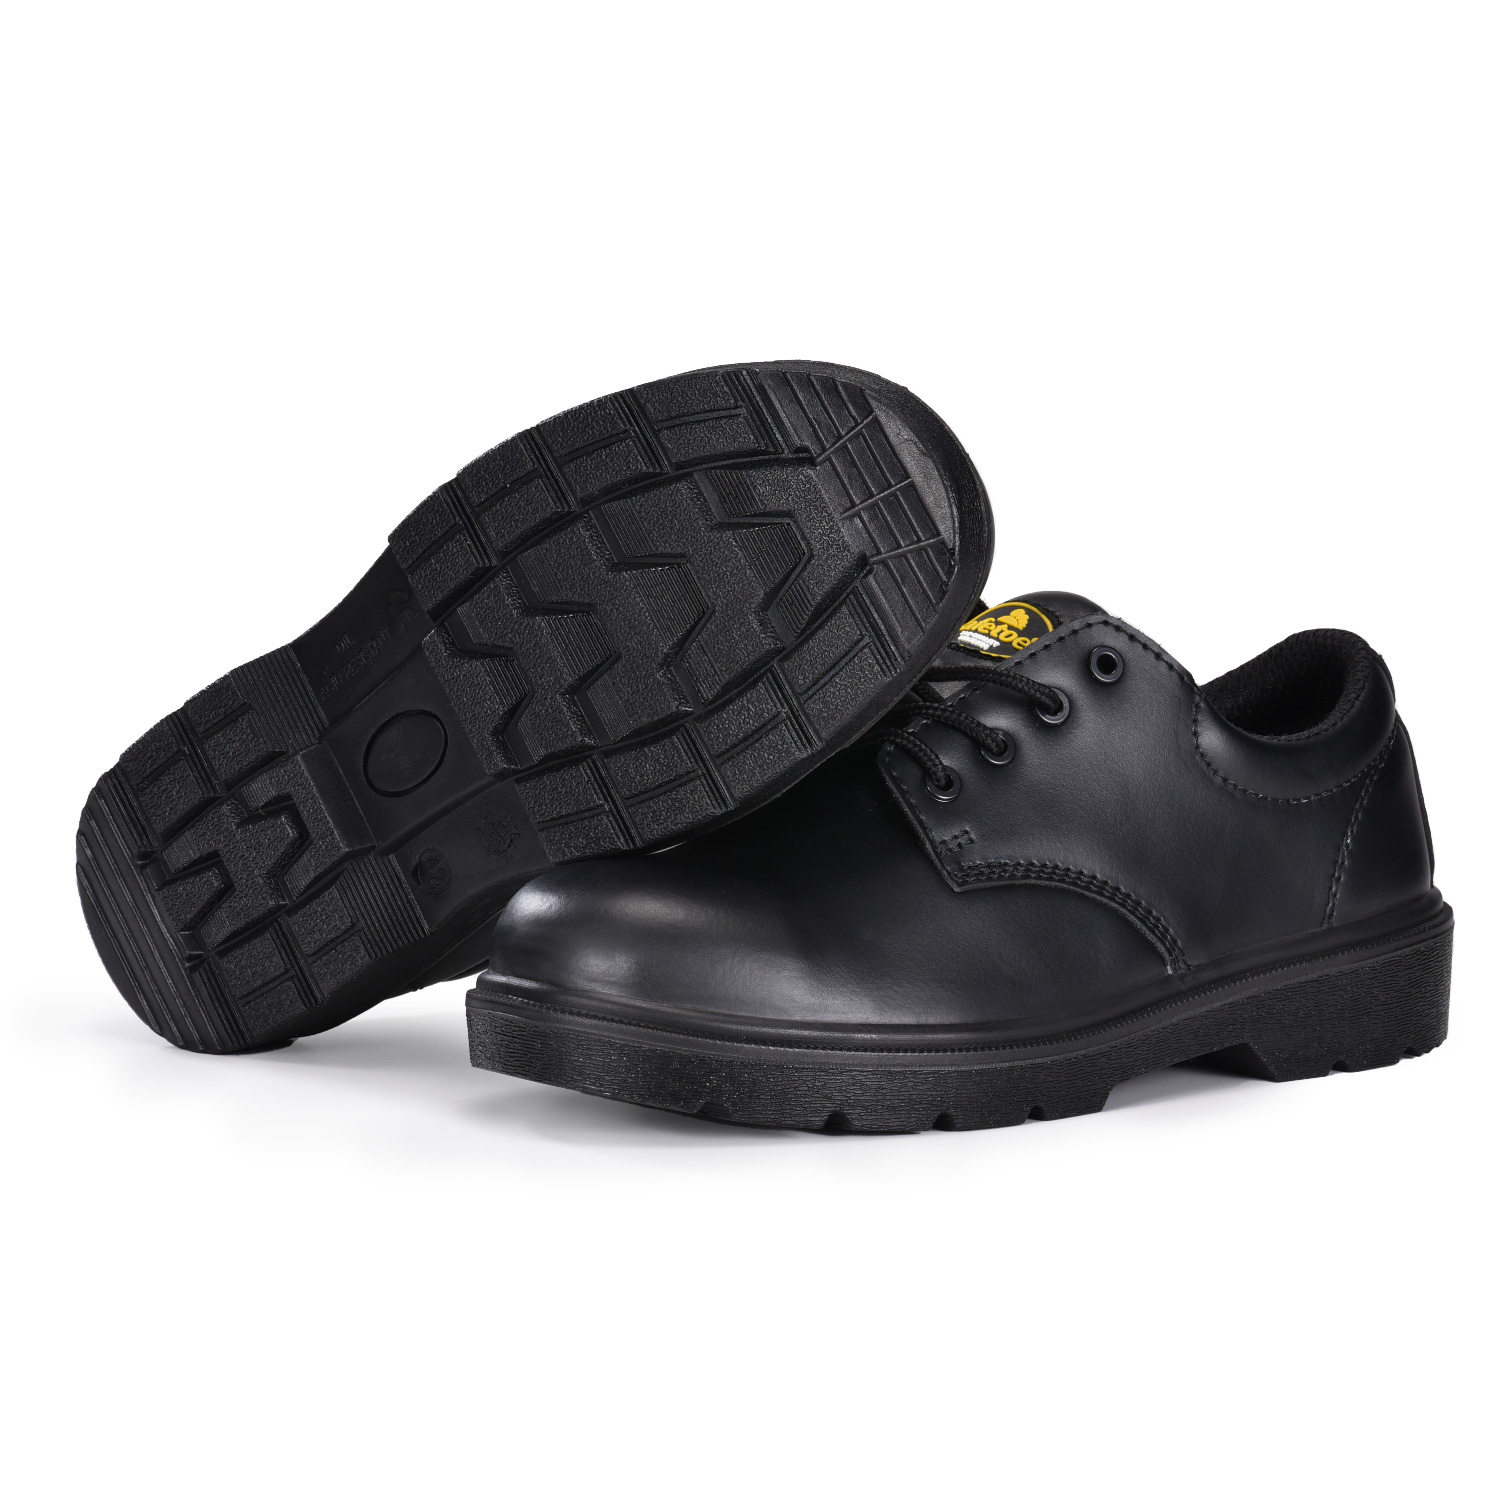 Защитная обувь S3 для инженеров и менеджеров с композитным носком и кевларовой межподошвой L-7144